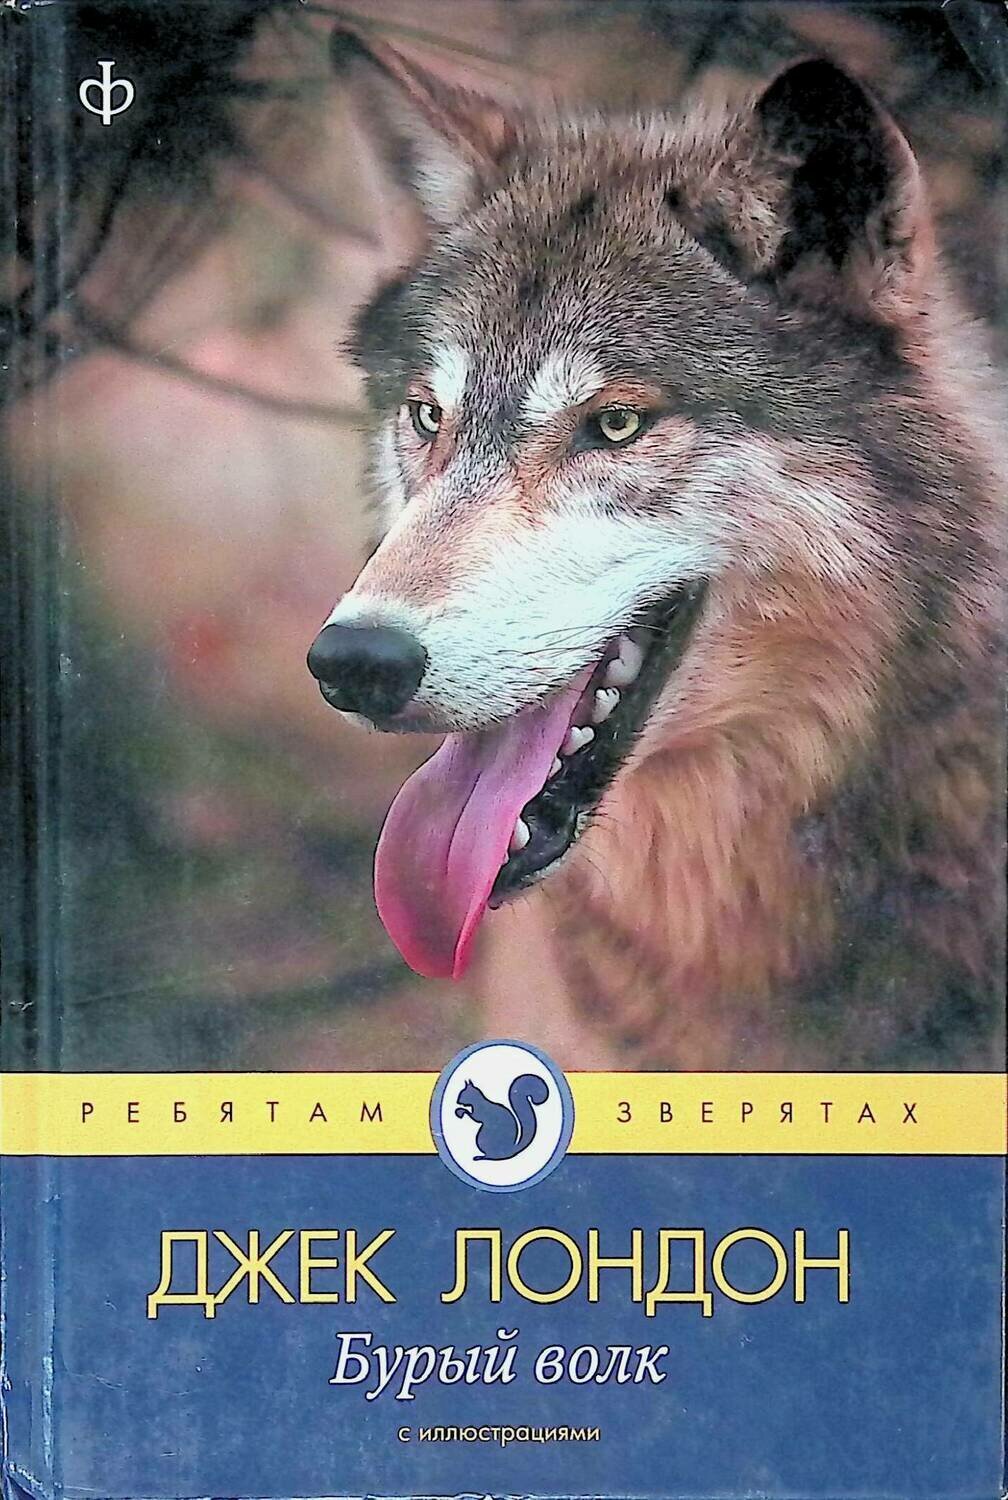 Читать книги про волков. Бурый волк Джек Лондон книга. Дж Лондон бурый волк. Книга про волка Джек Лондон. Белый волк Джек Лондон книга.